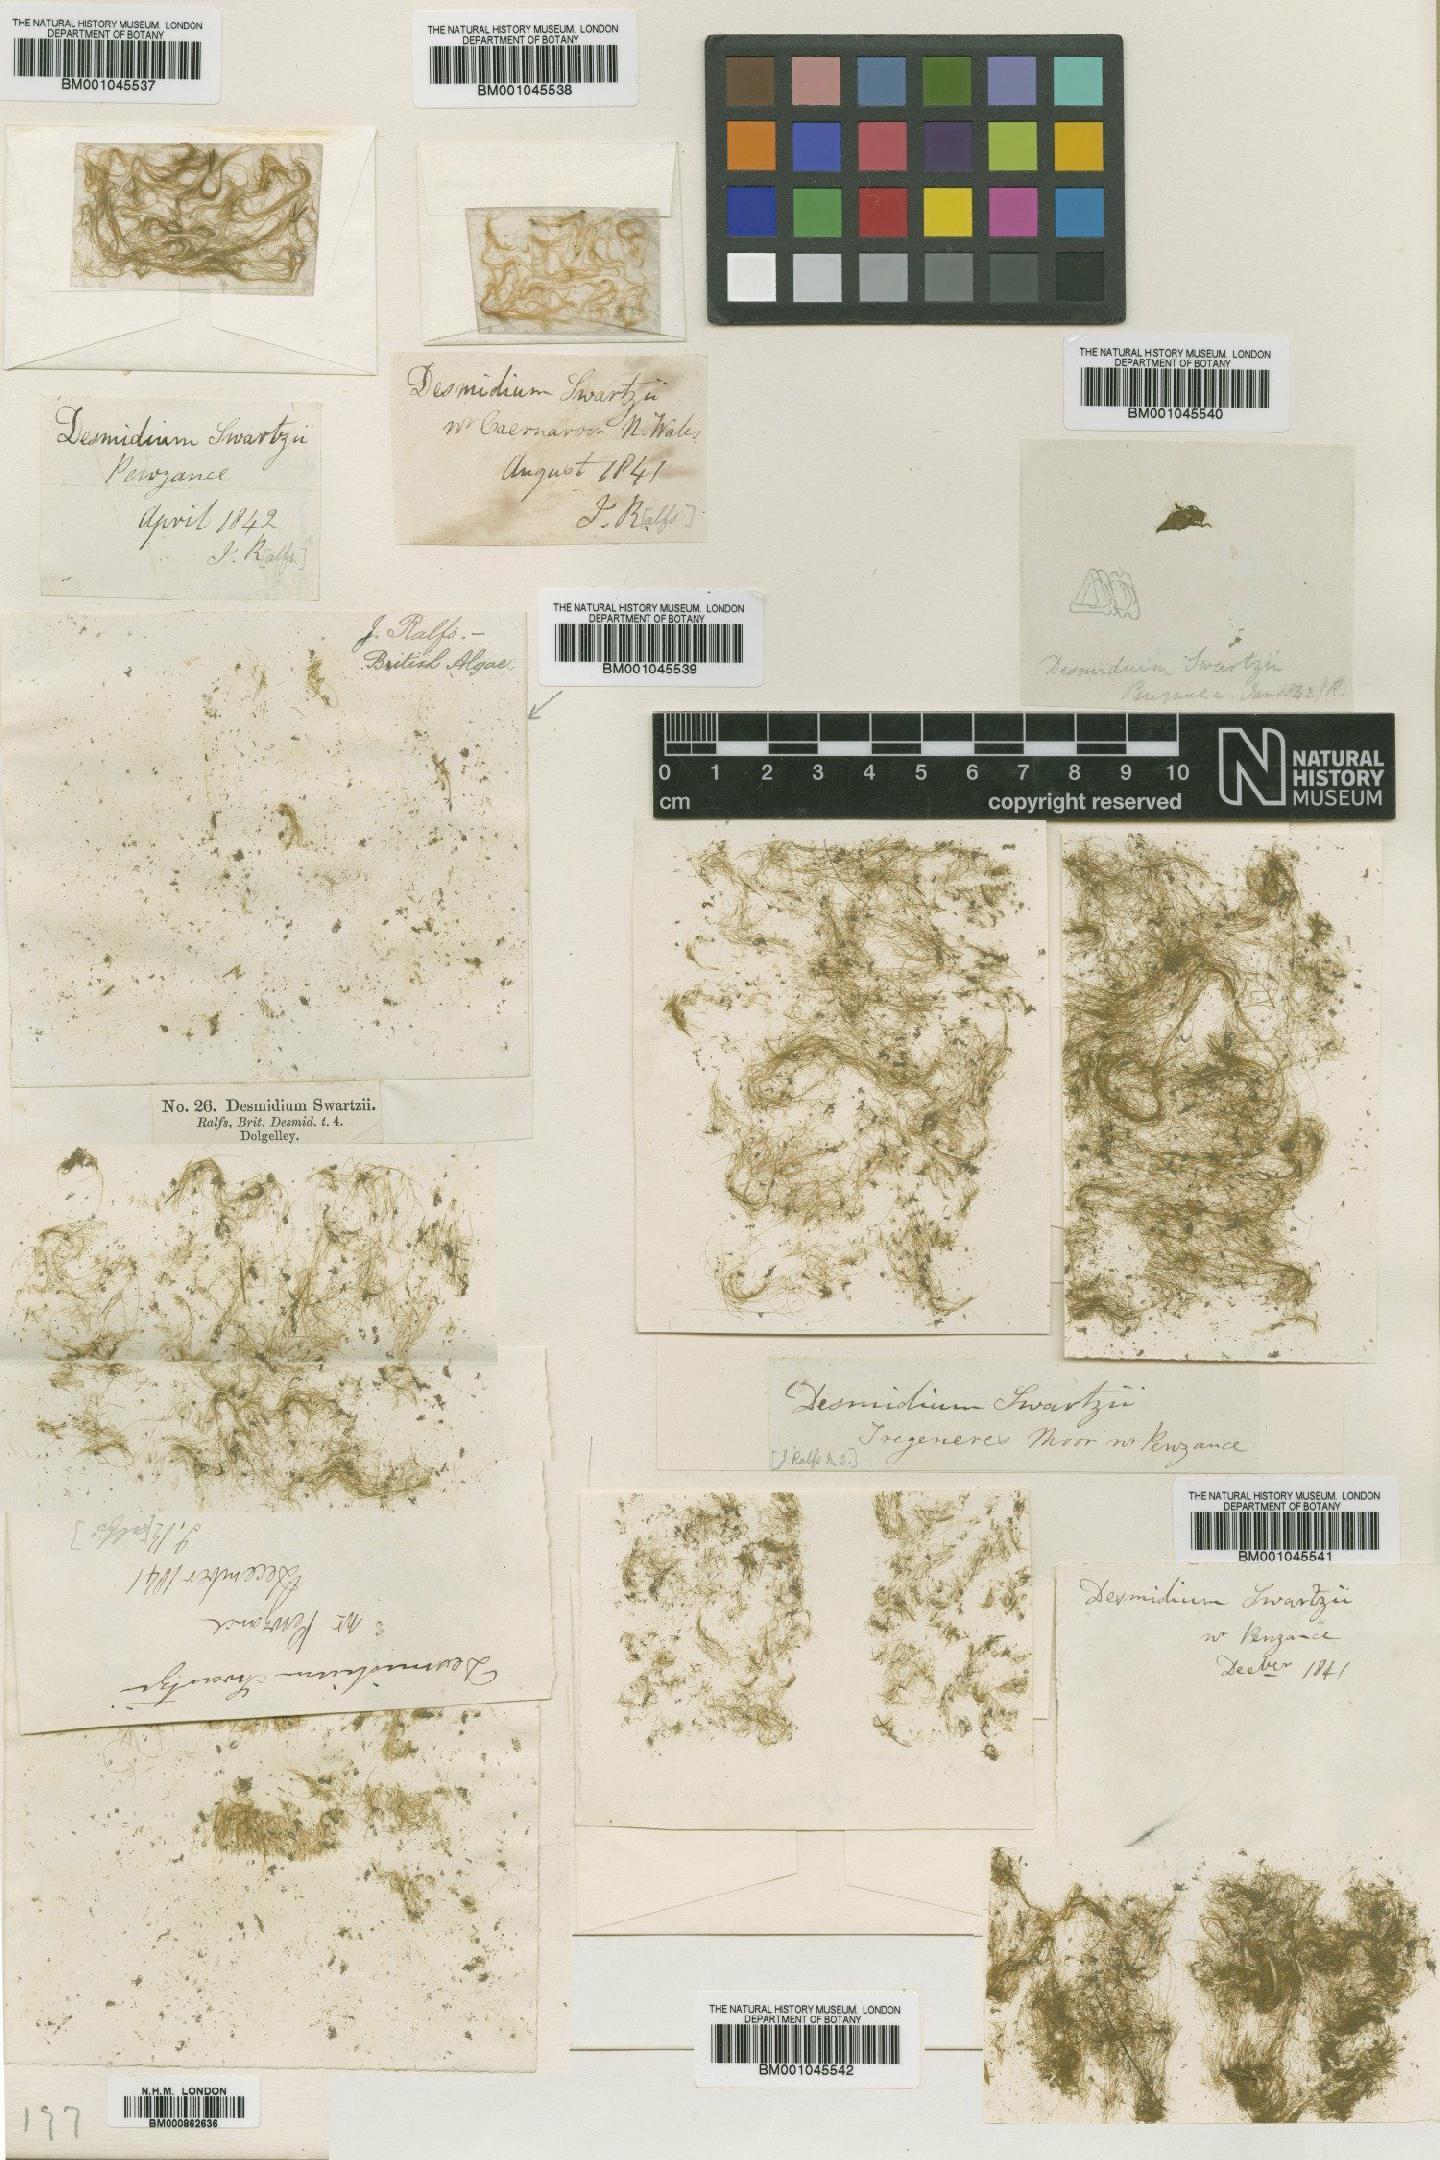 To NHMUK collection (Desmidium swartzii Ralfs; Type; NHMUK:ecatalogue:739654)